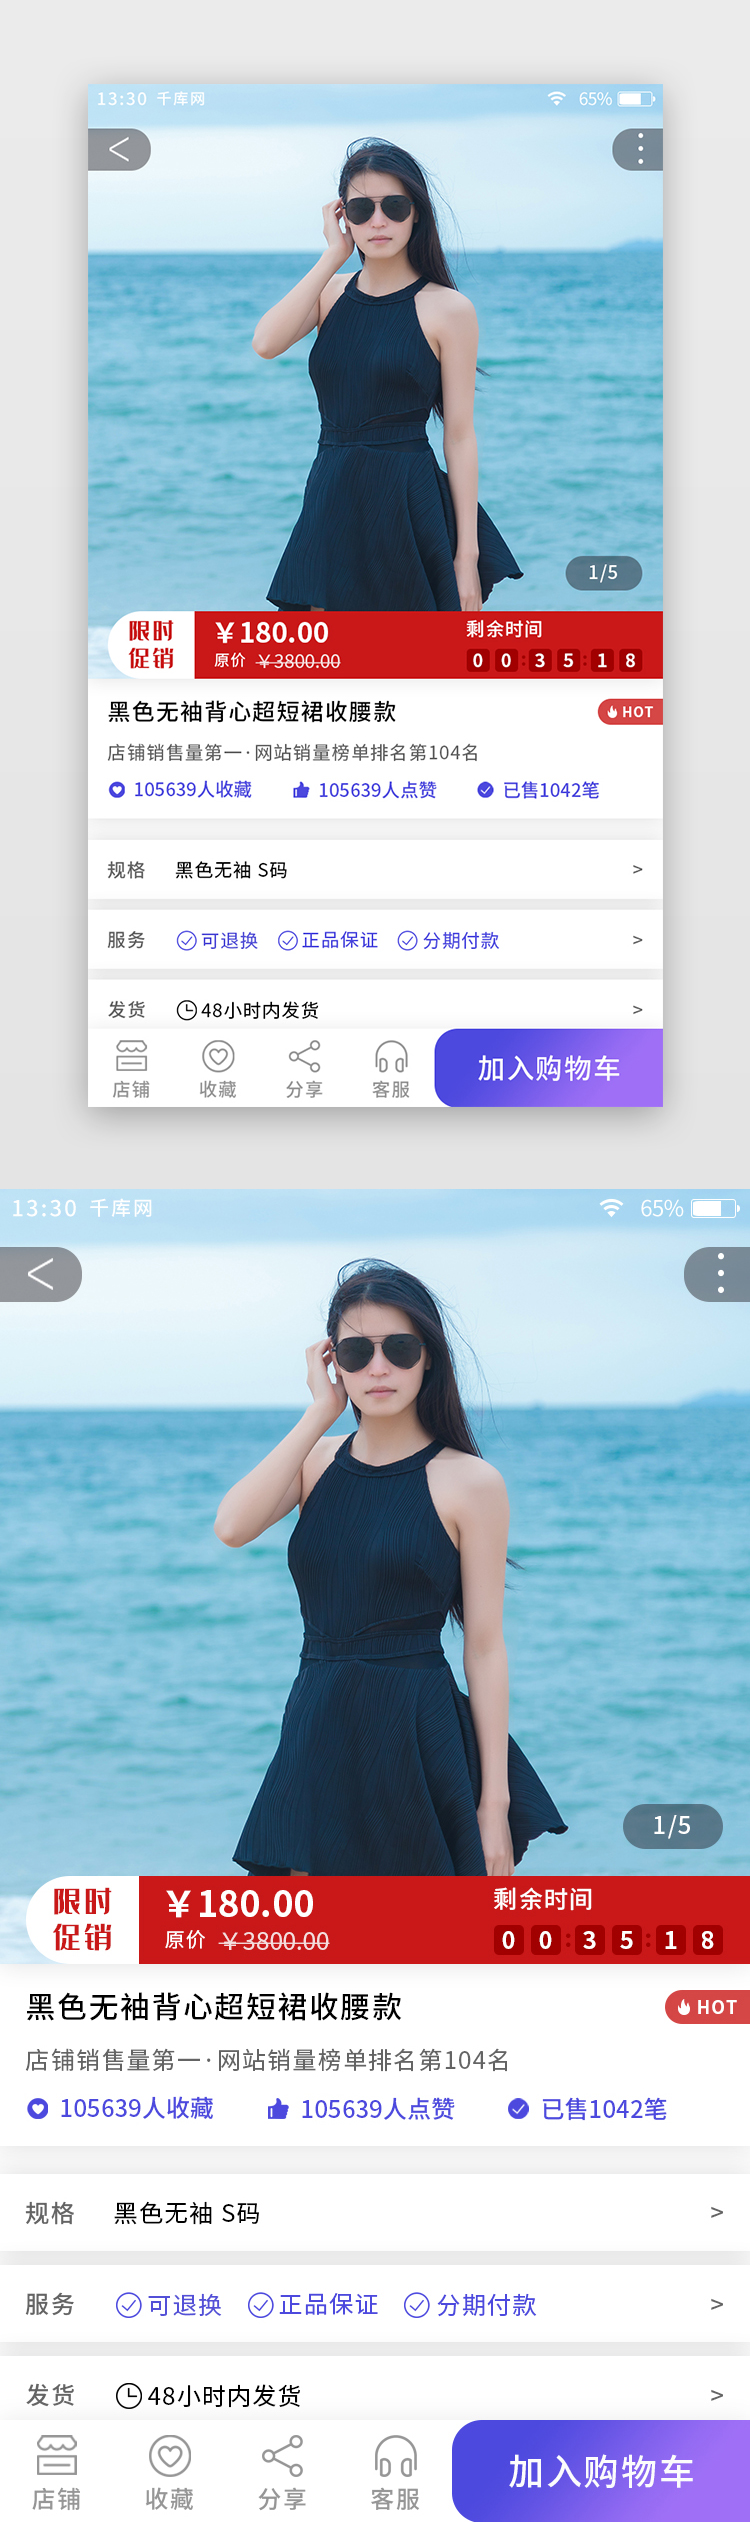 紫色渐变综合电商app商品详情页图片